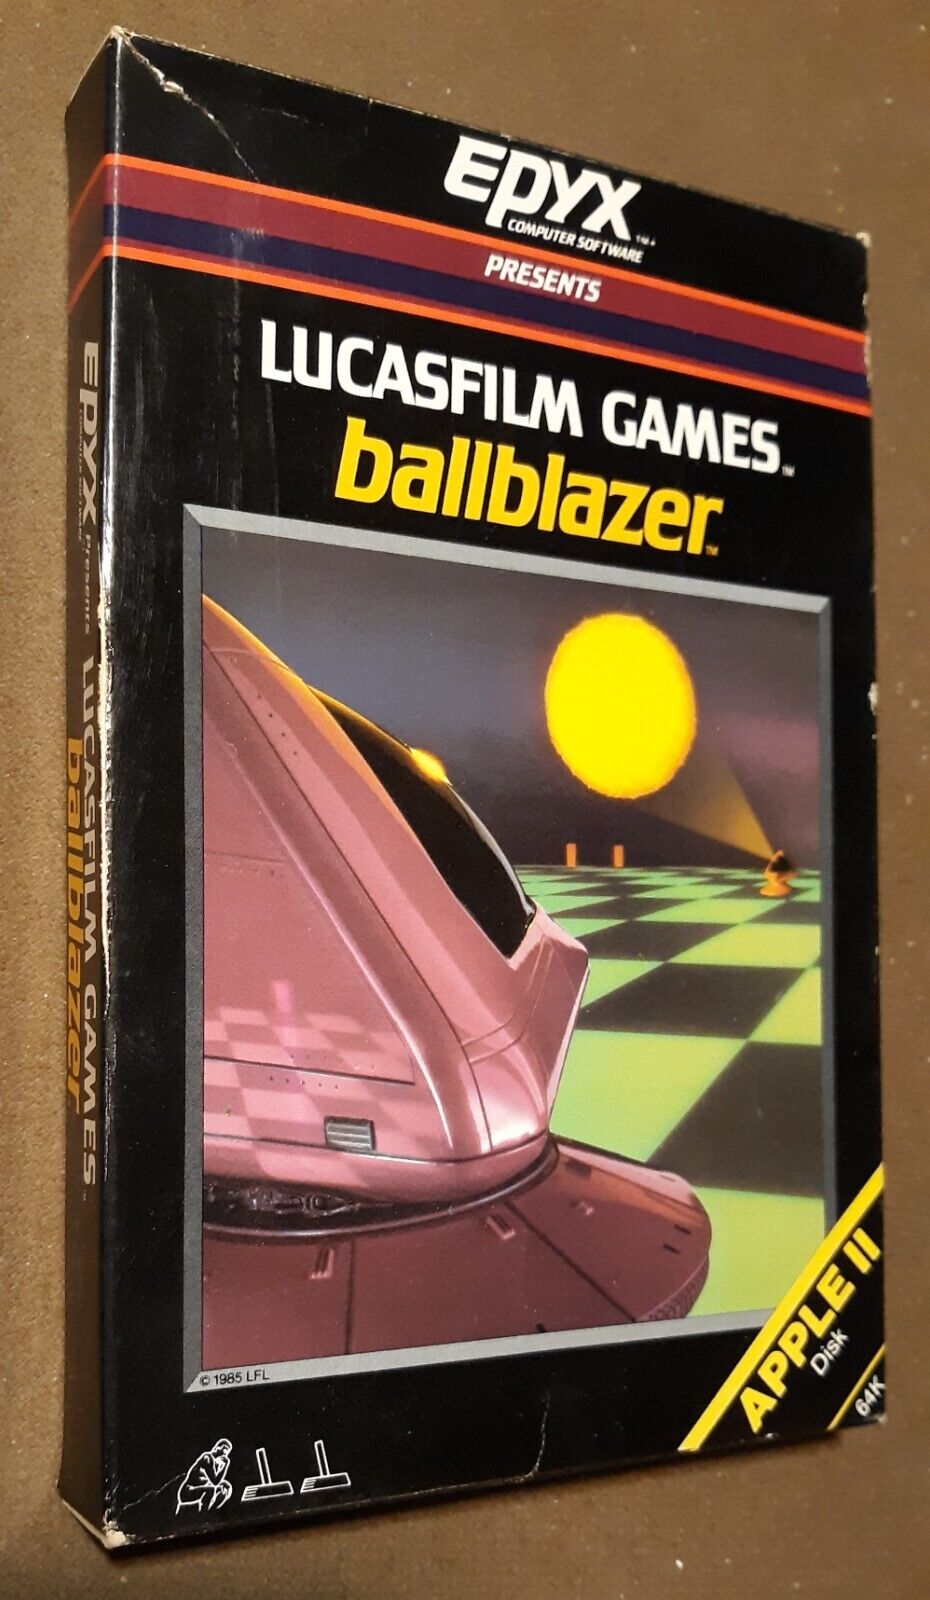 Ballblazer by EPYX/Lucasfilm Games 1985 for Apple II+,IIe,IIc,IIgs